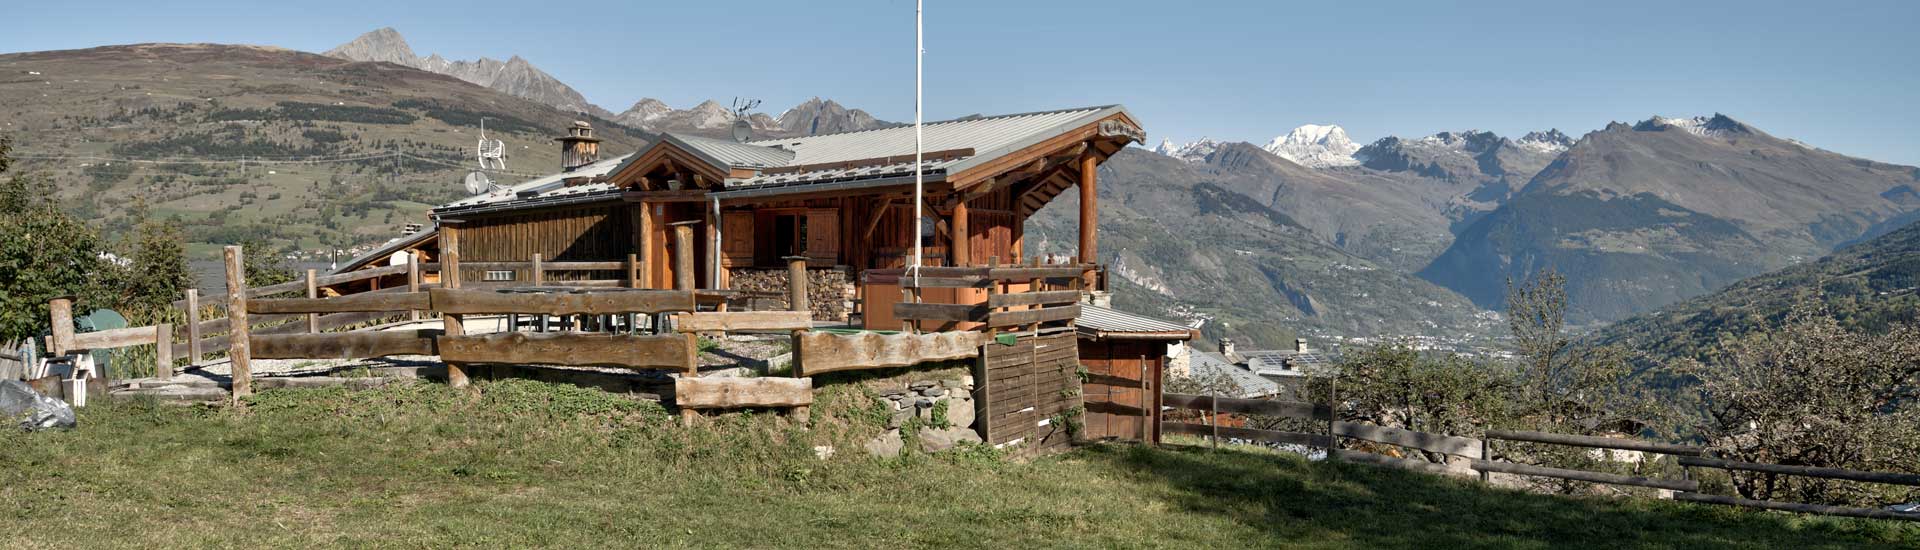 Chalet Mont-Blanc for rent at Montchavin on La Plagne Tarentaise